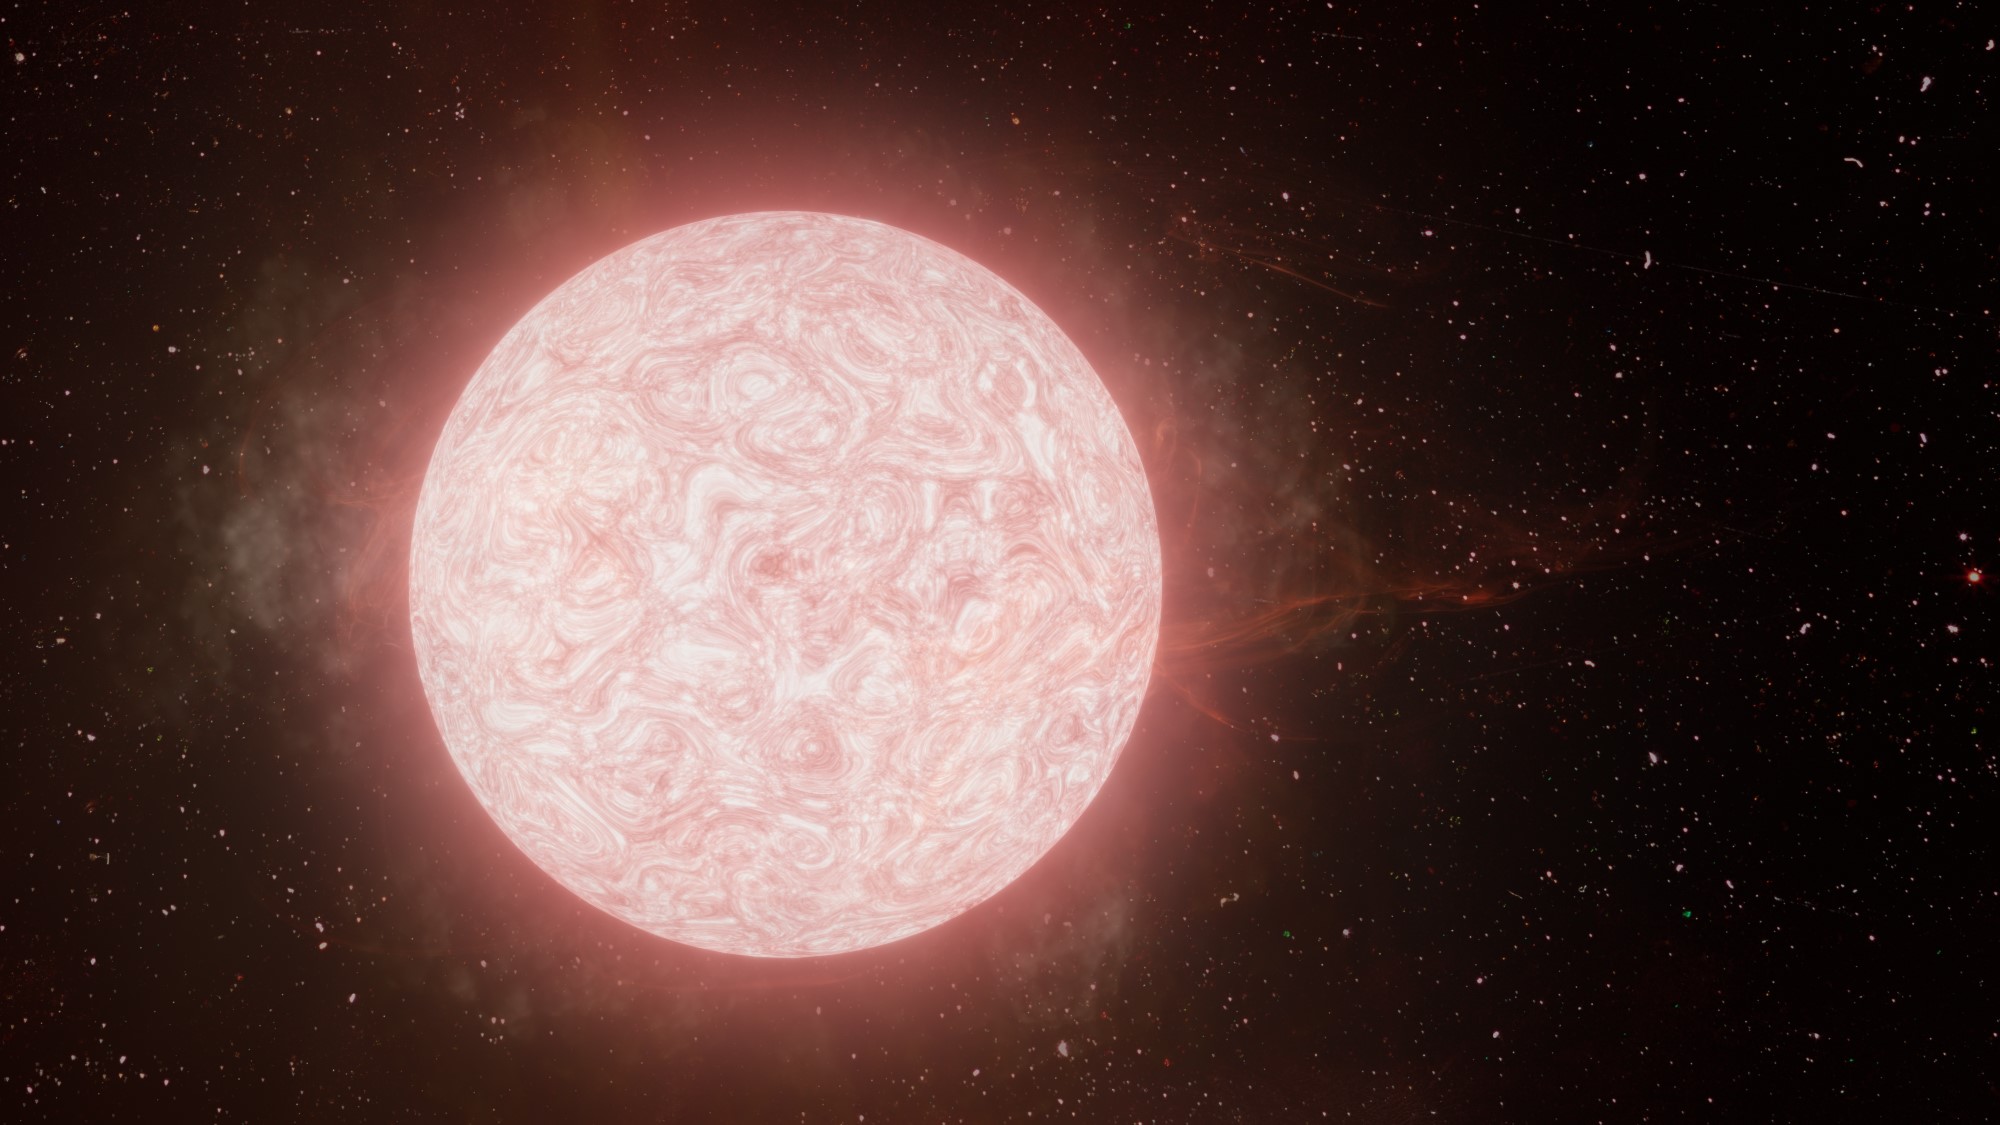 موت نجم: العلماءُ يرصدونَ نجماً عملاقاً أحمراً قبل أن ينفجرَ في سابقةٍ كونيَّة